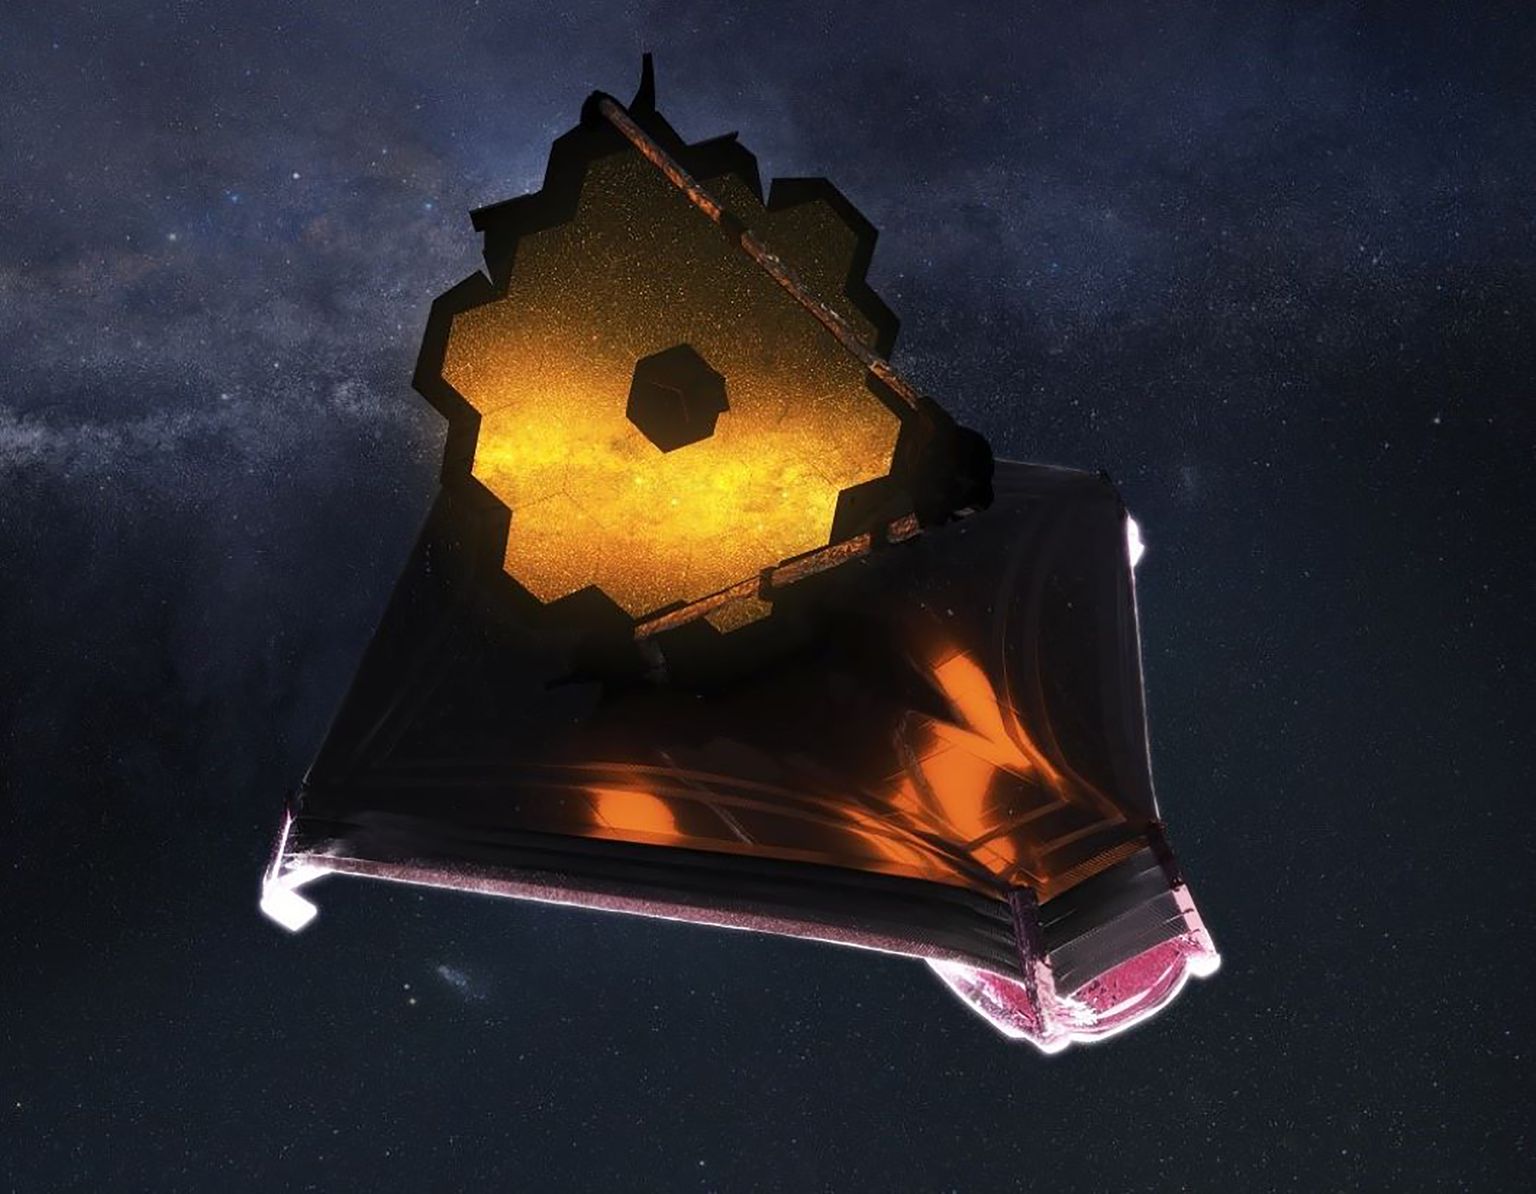 James Webbi kosmoseteleskoobi tenniseväljaku suuruse segmentidest koosneva peegli vastu lendas juba viies meteoriit, mis oli sensitest suurim.